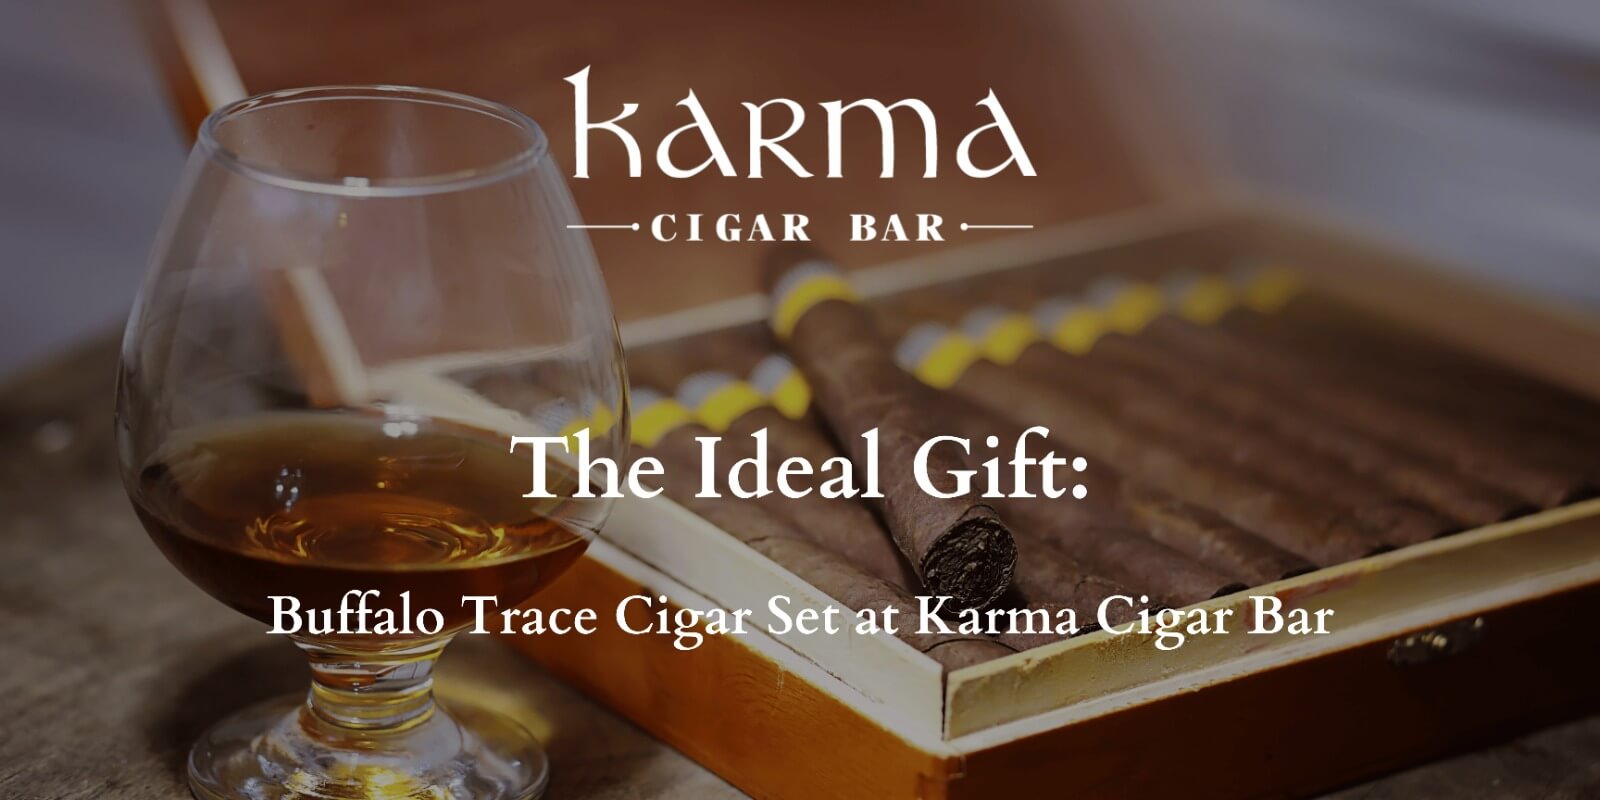 Buffalo Trace Cigar Set at Karma Cigar Bar